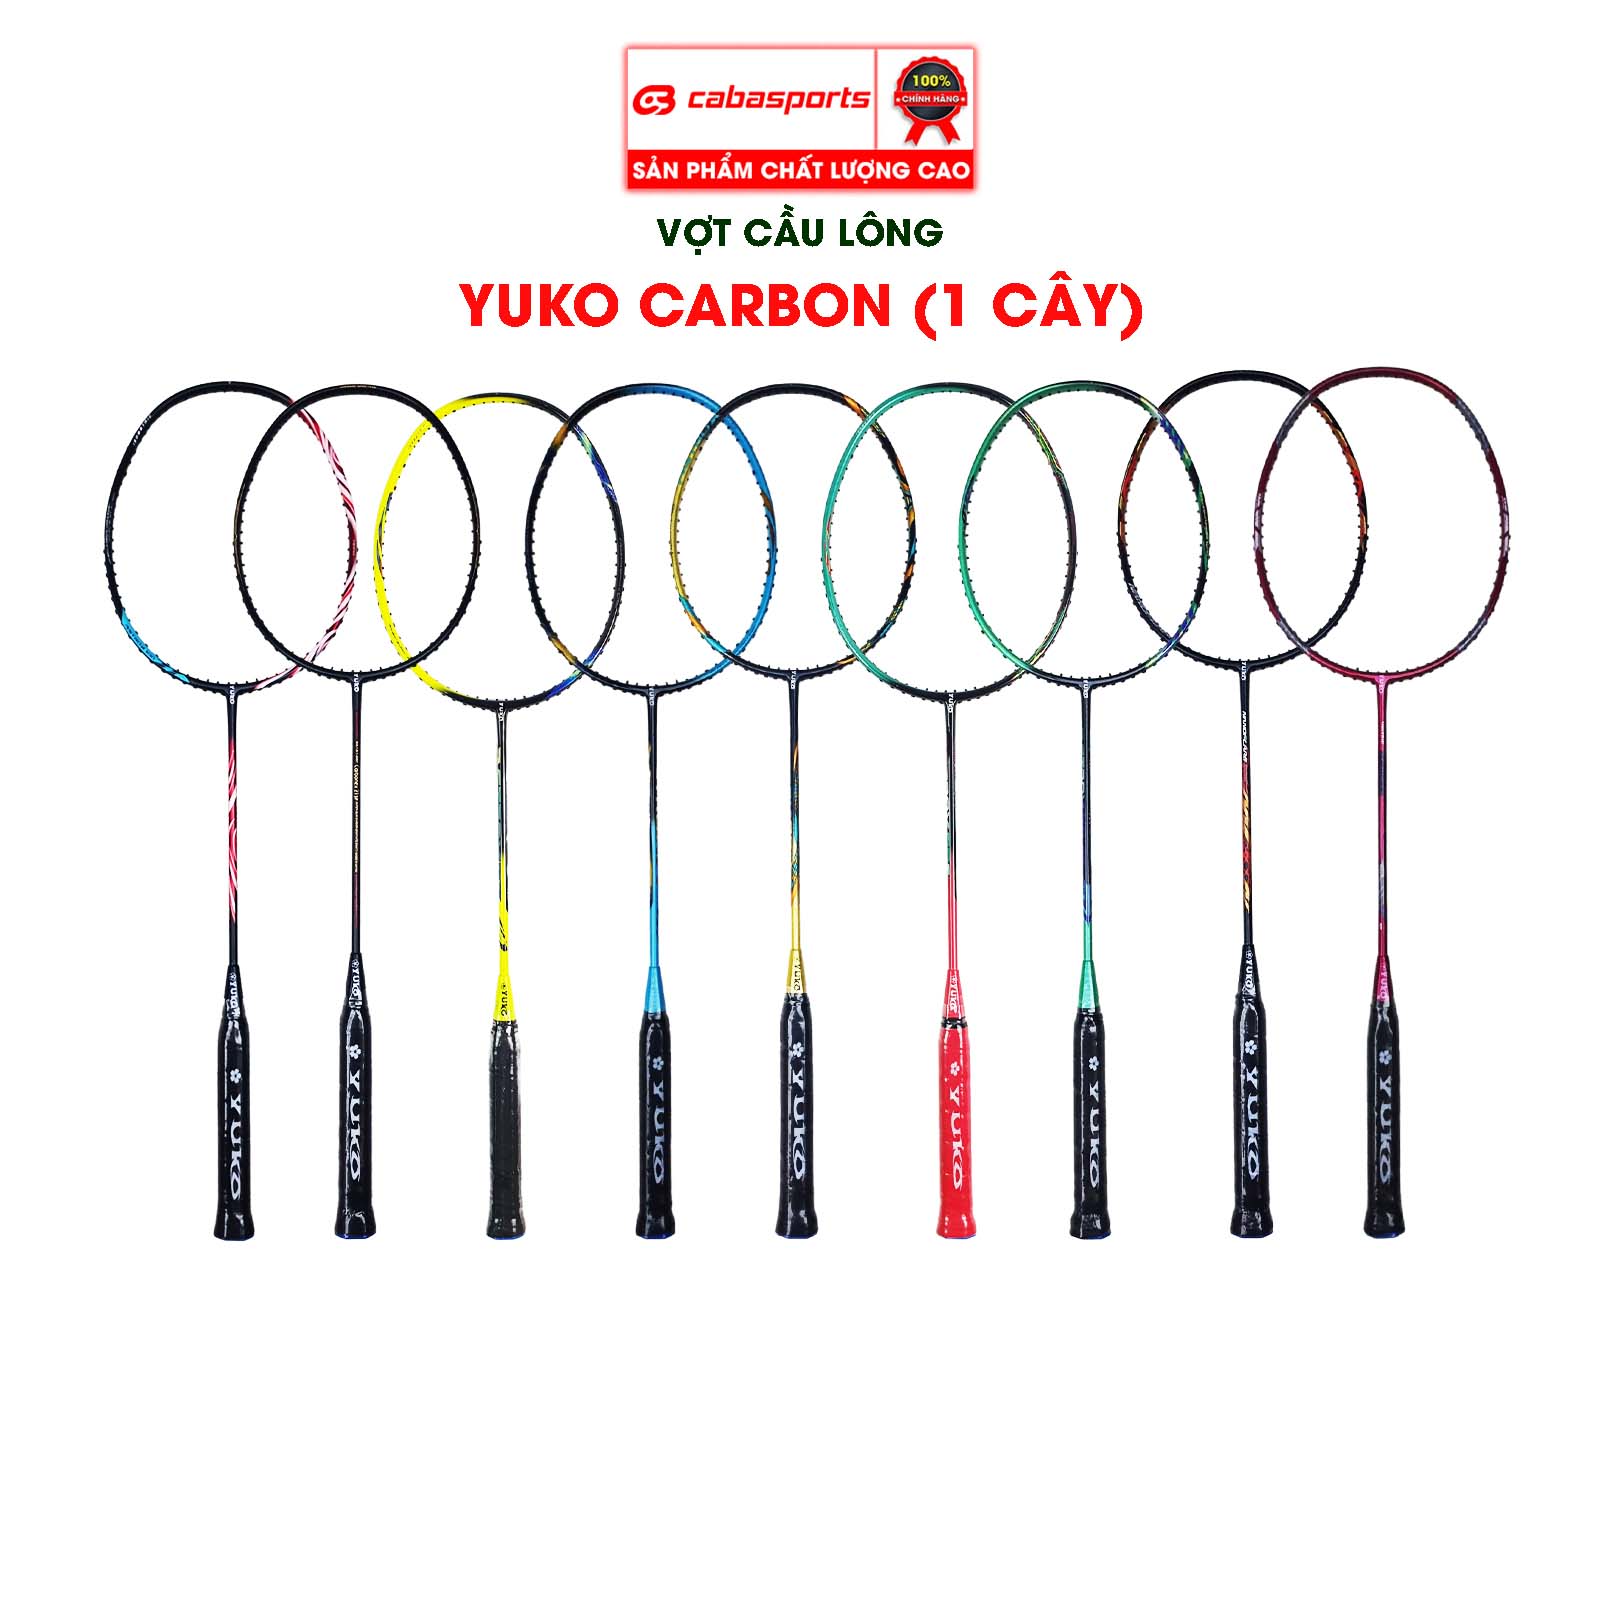 Vợt cầu lông YK Carbon đan lưới sẵn 9-10kg giá rẻ chính hãng chất lượng (1cây) - MÀU NGẪU NHIÊN